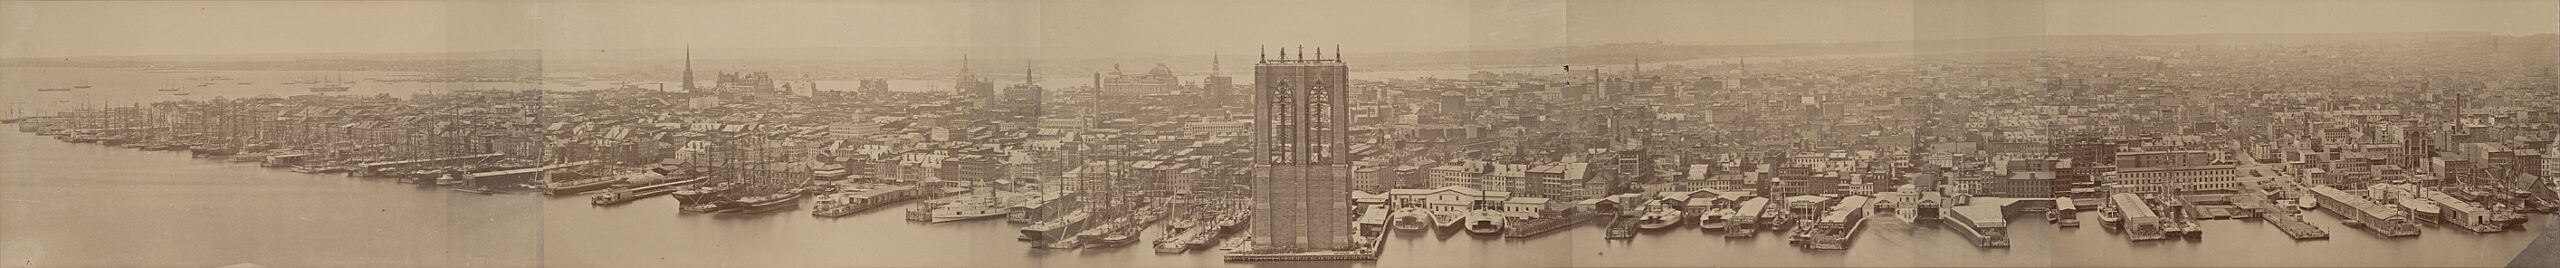 Одна из самых больших панорам с видом на Нижний Манхэттен 1876 года, Нью-Йорк на раннем этапе трансформации